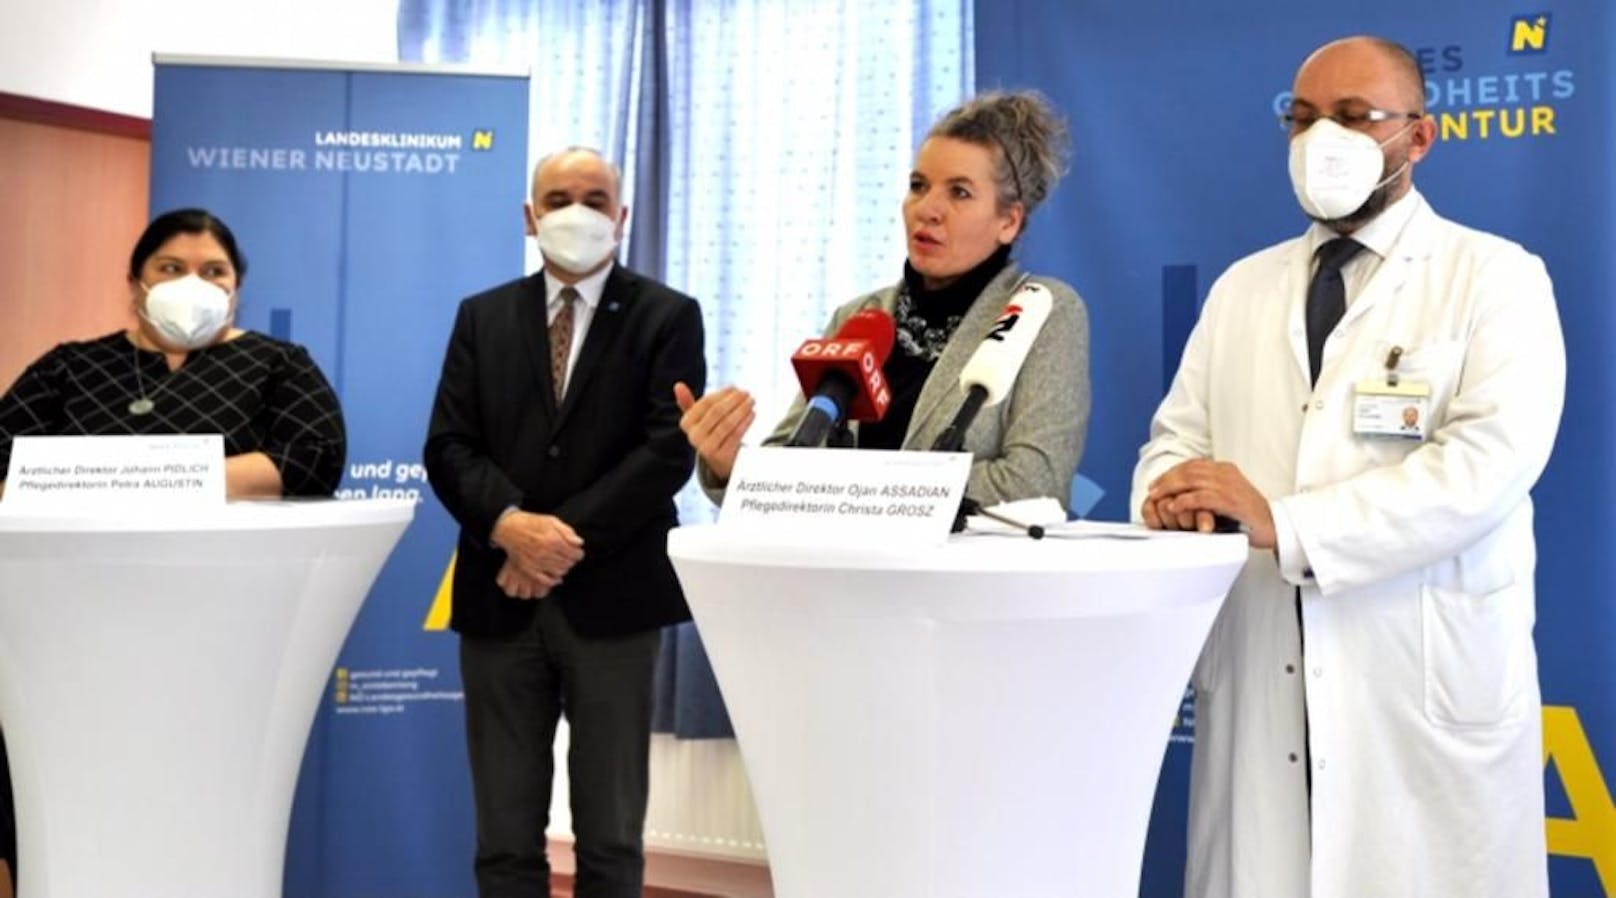 Verantwortliche bei der Spitals-Pressekonferenz in Wr. Neustadt